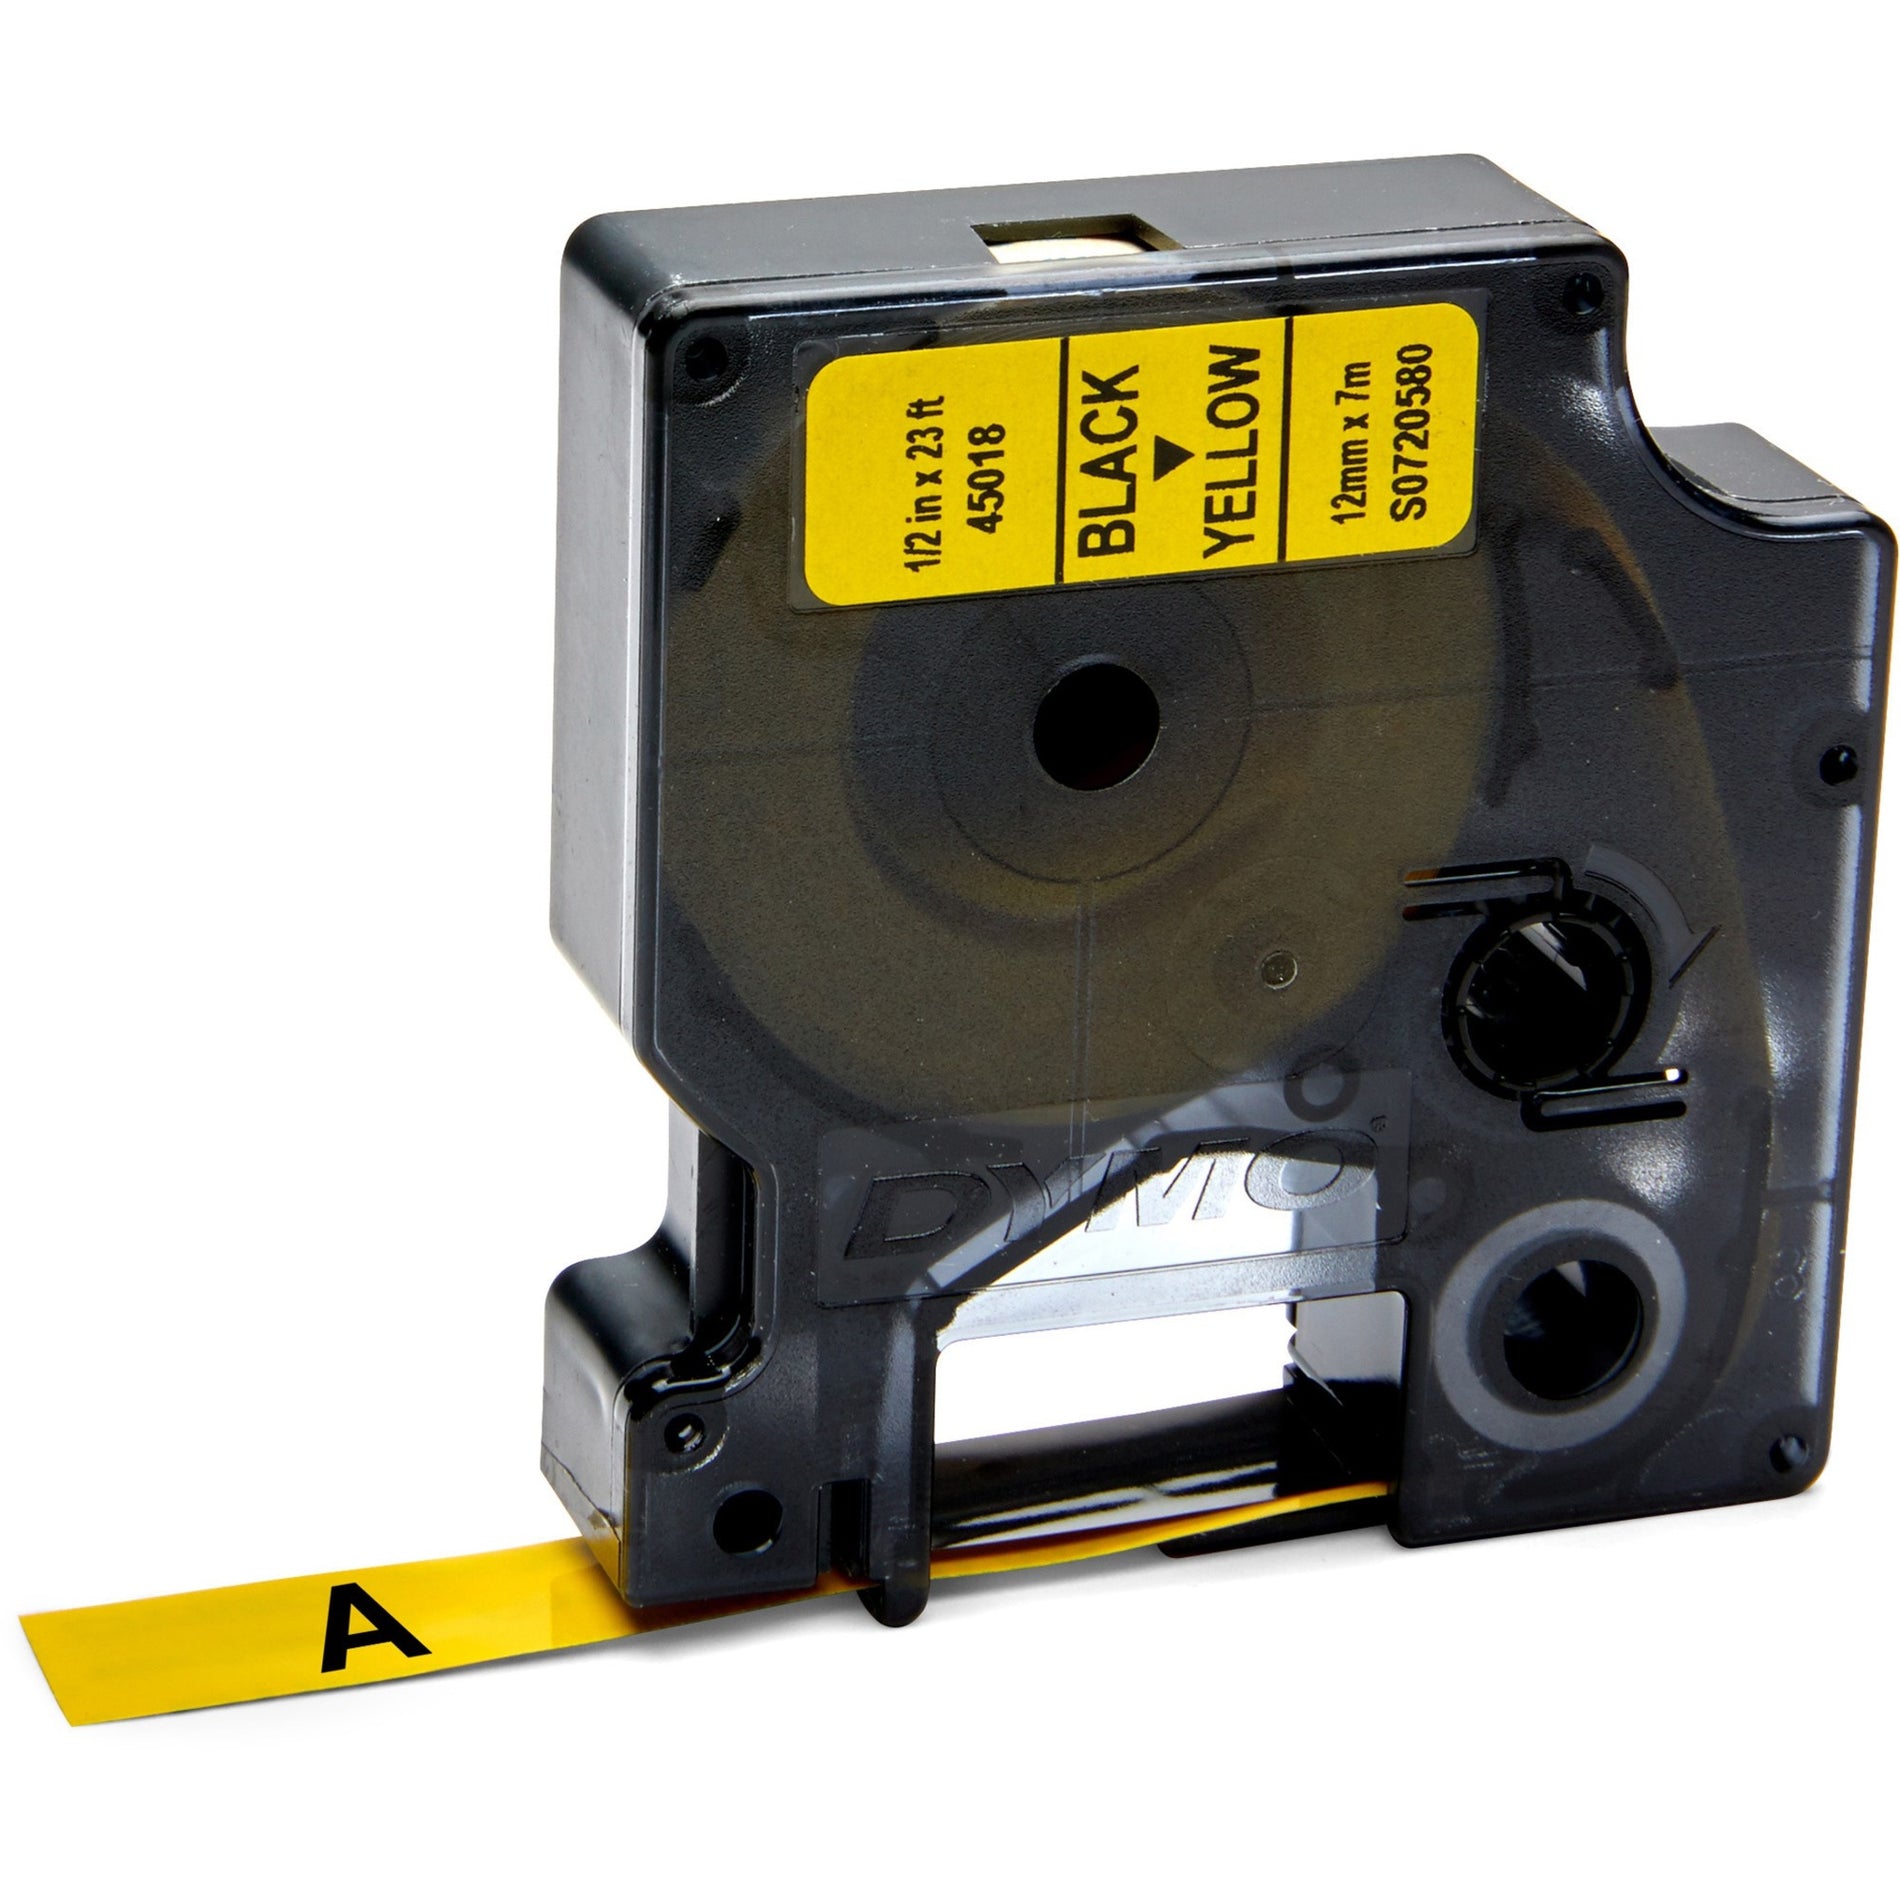 Dymo 45018 D1 Electronic Tape Cartridge, 1/2"x23' Size, Black/Yellow